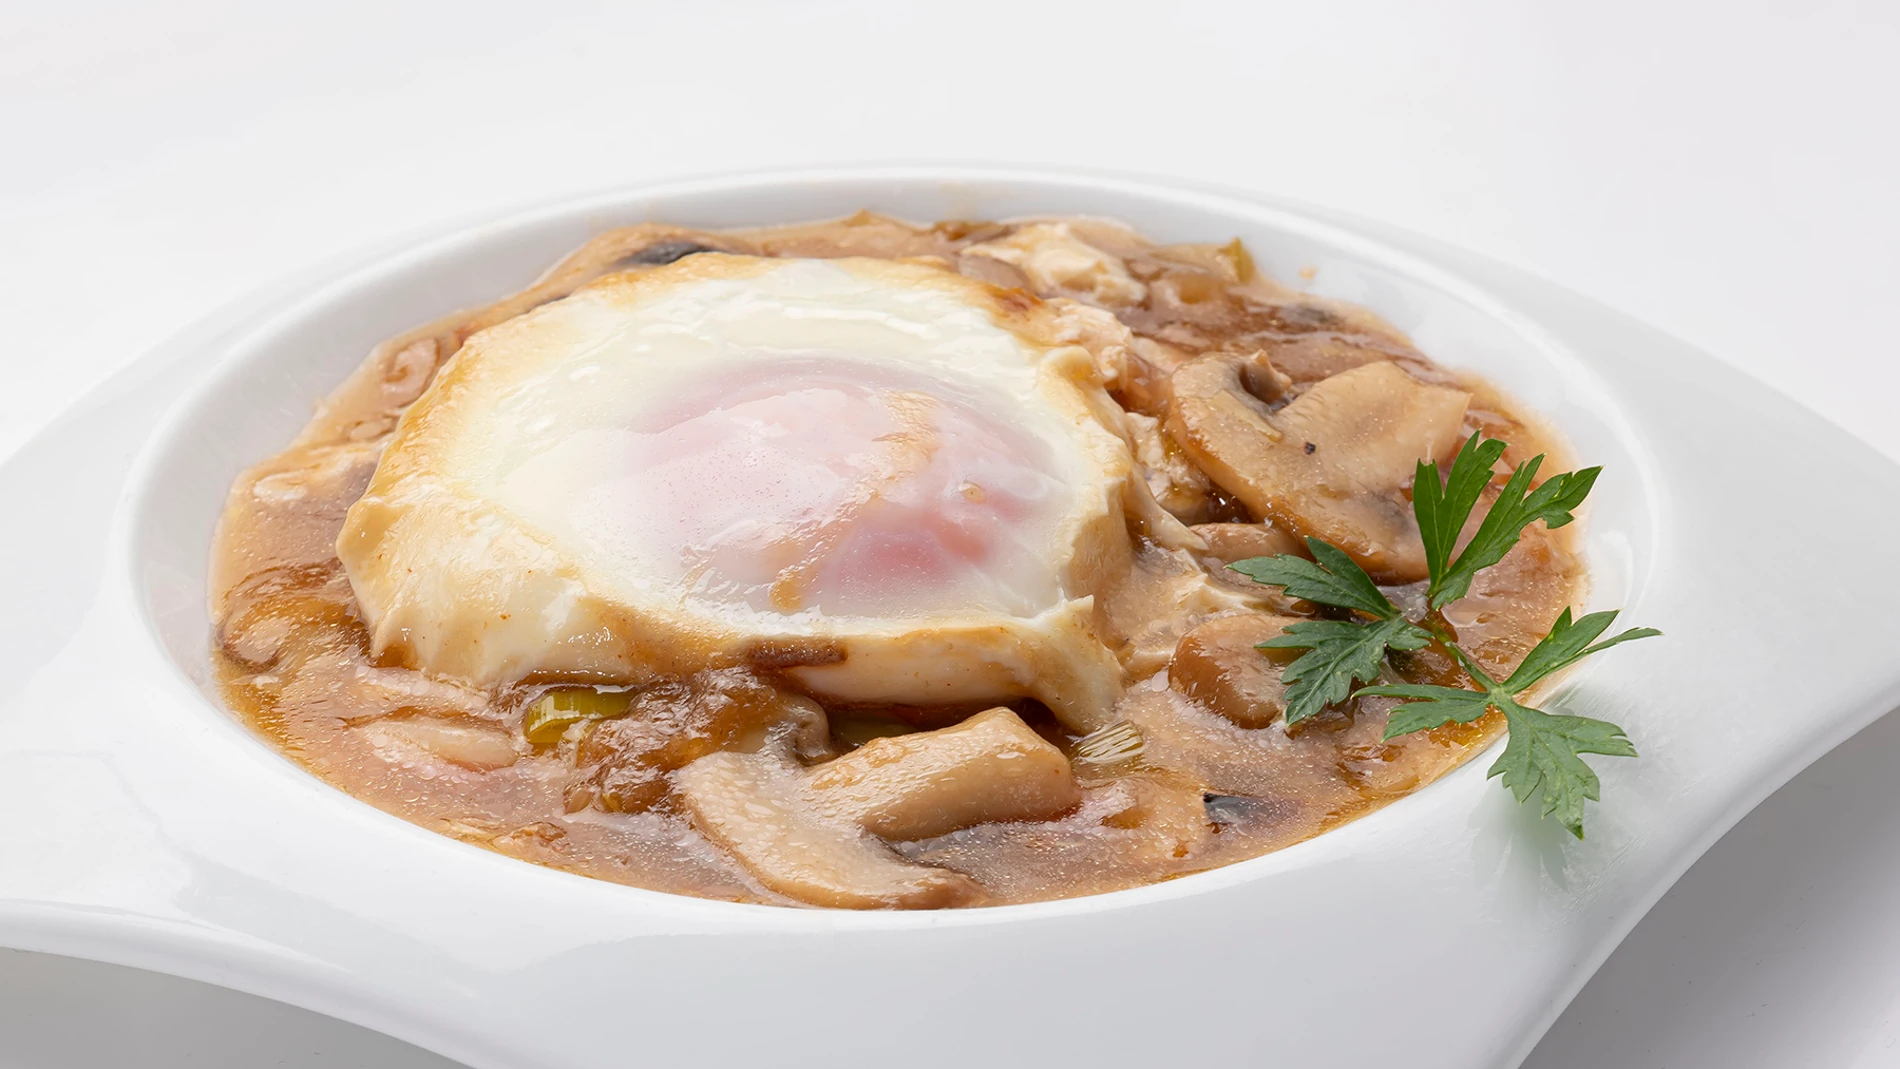 La receta de Karlos Arguiñano "con la que vamos a triunfar": huevos con salsa bretona